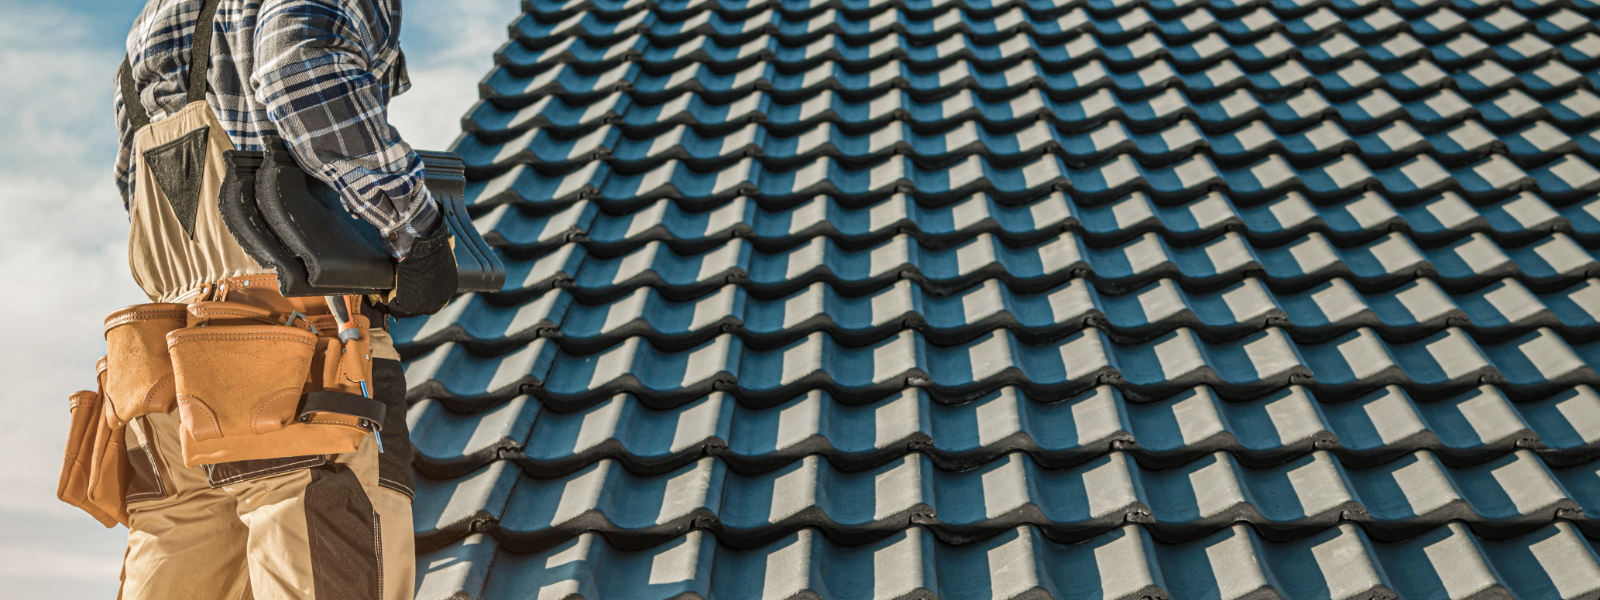 SKAR EHITUS OÜ - SKAR EHITUS OÜ tegeleb katusetöödega, pakkudes kvaliteetseid lahendusi viilkatuste ehituseks ja SBS k...